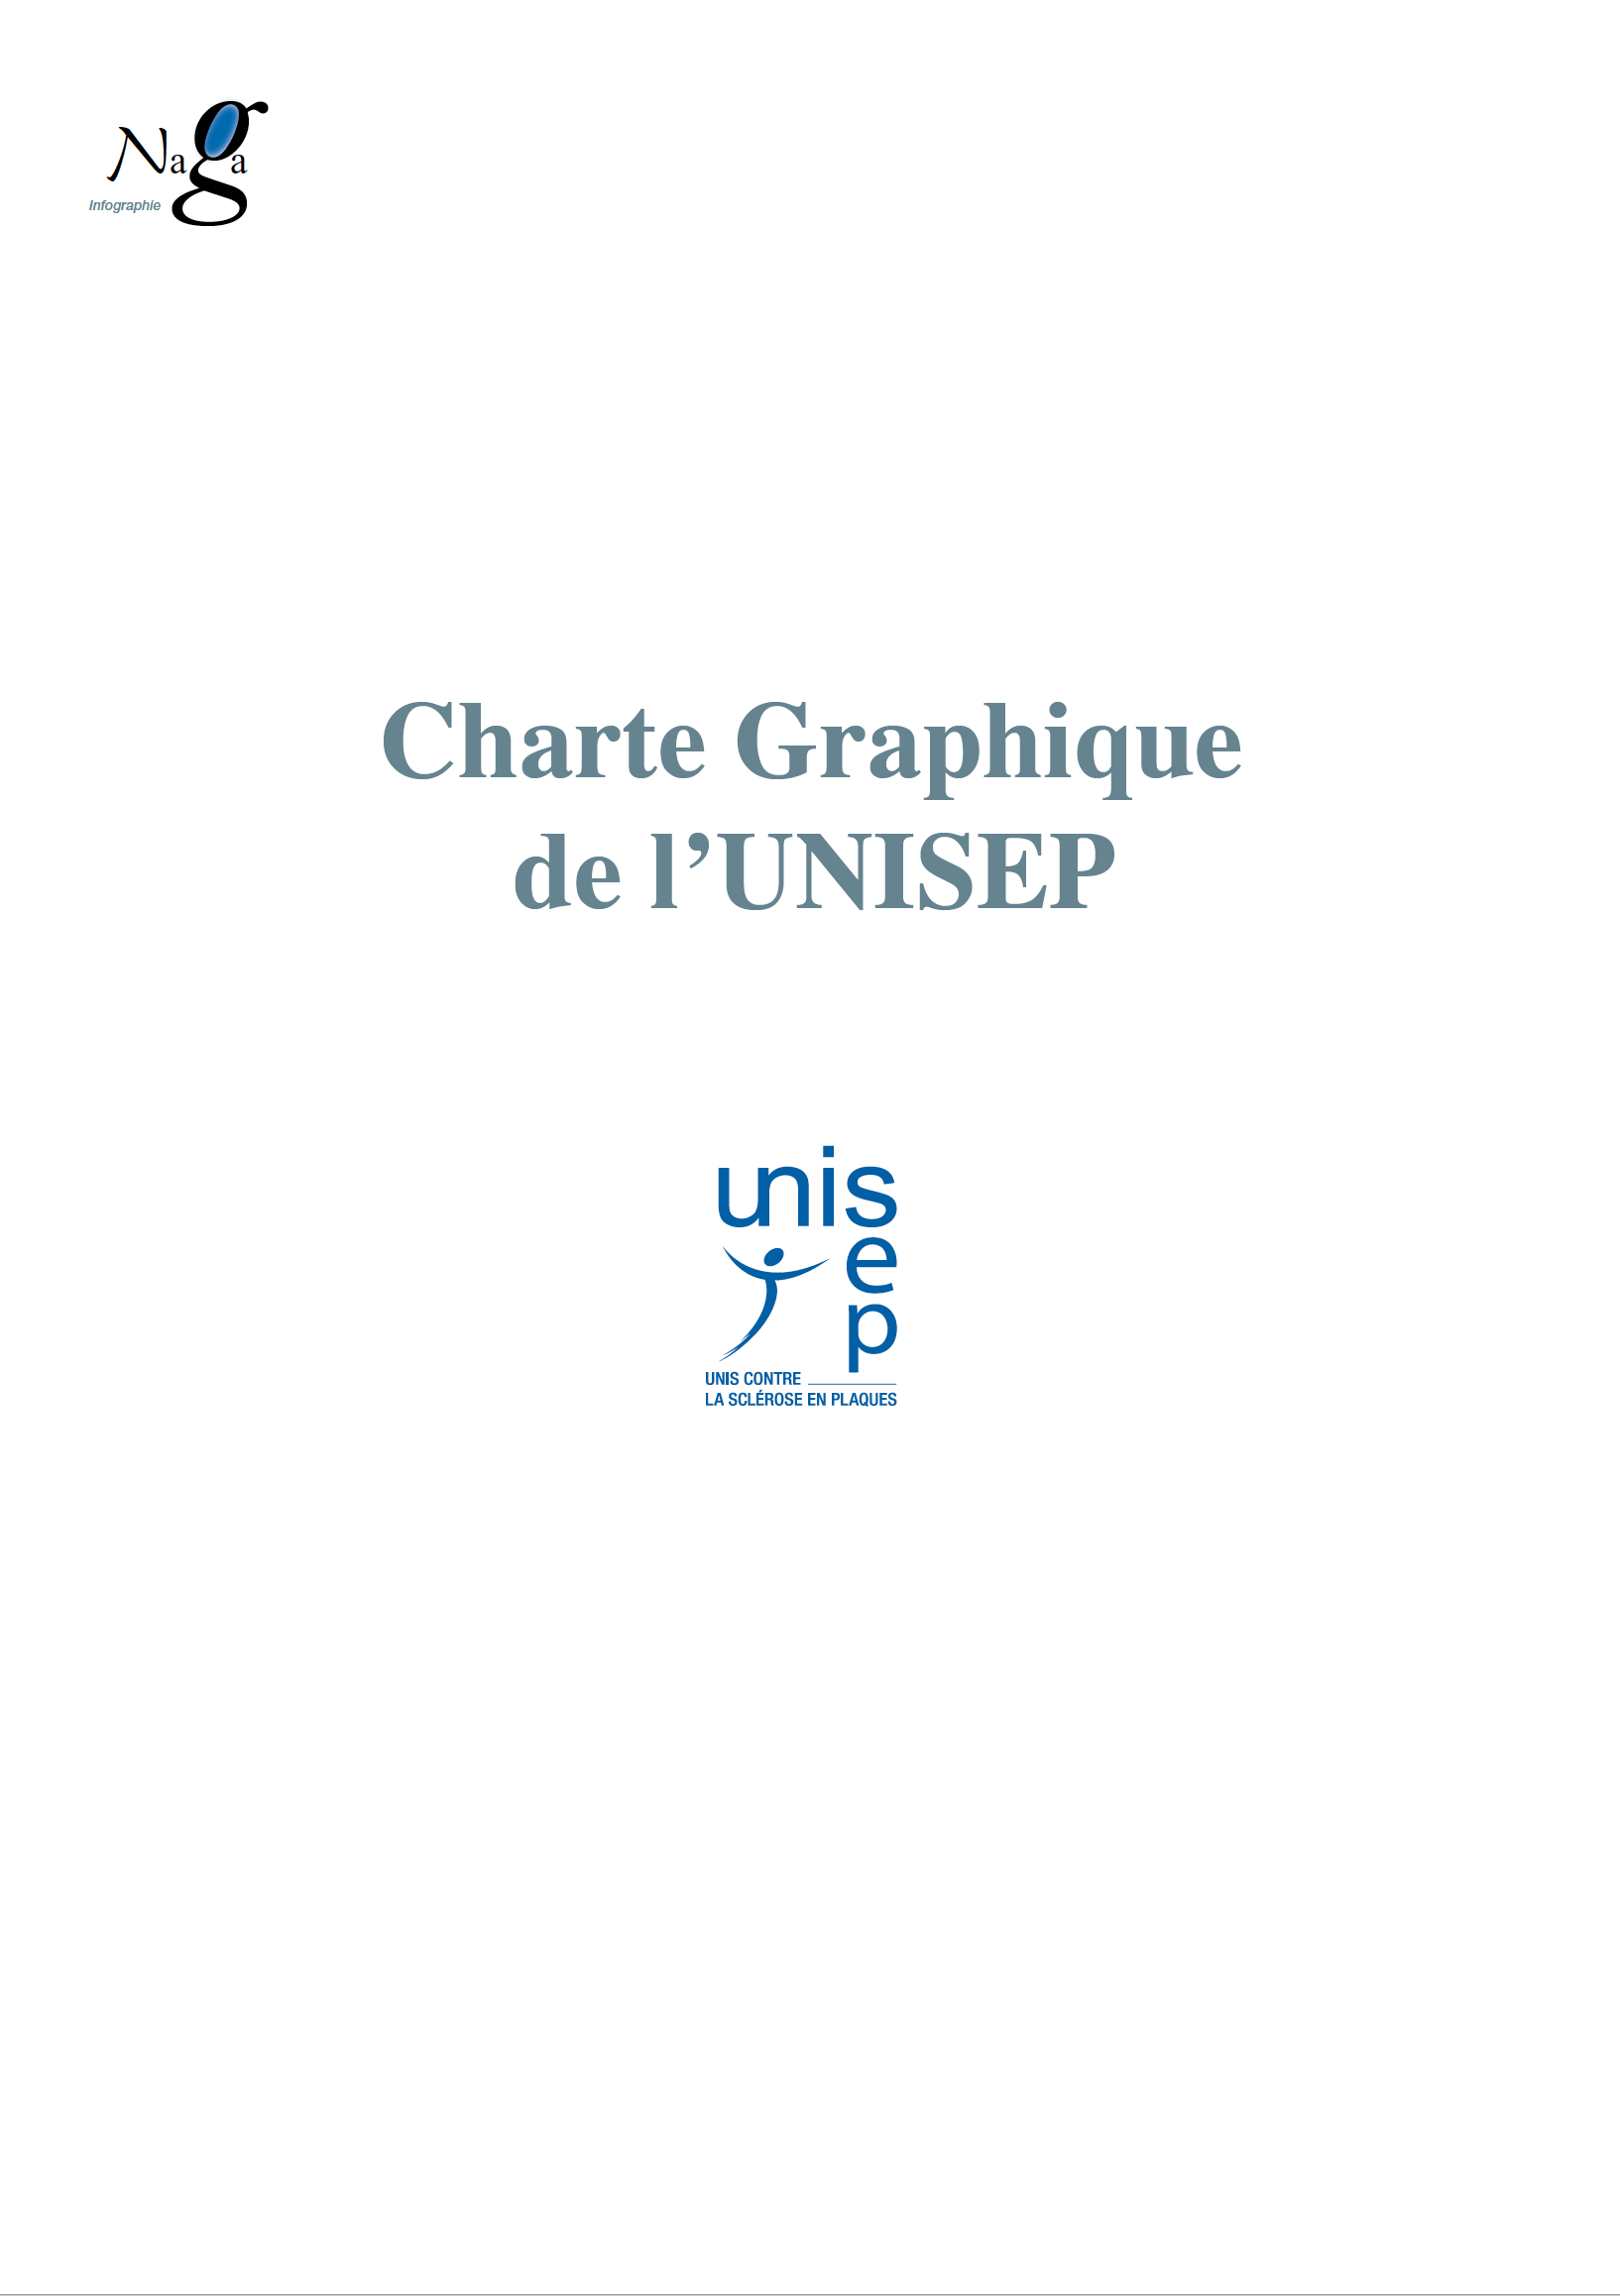 UNISEP - Charte graphique, création, réalisation, impression, couverture